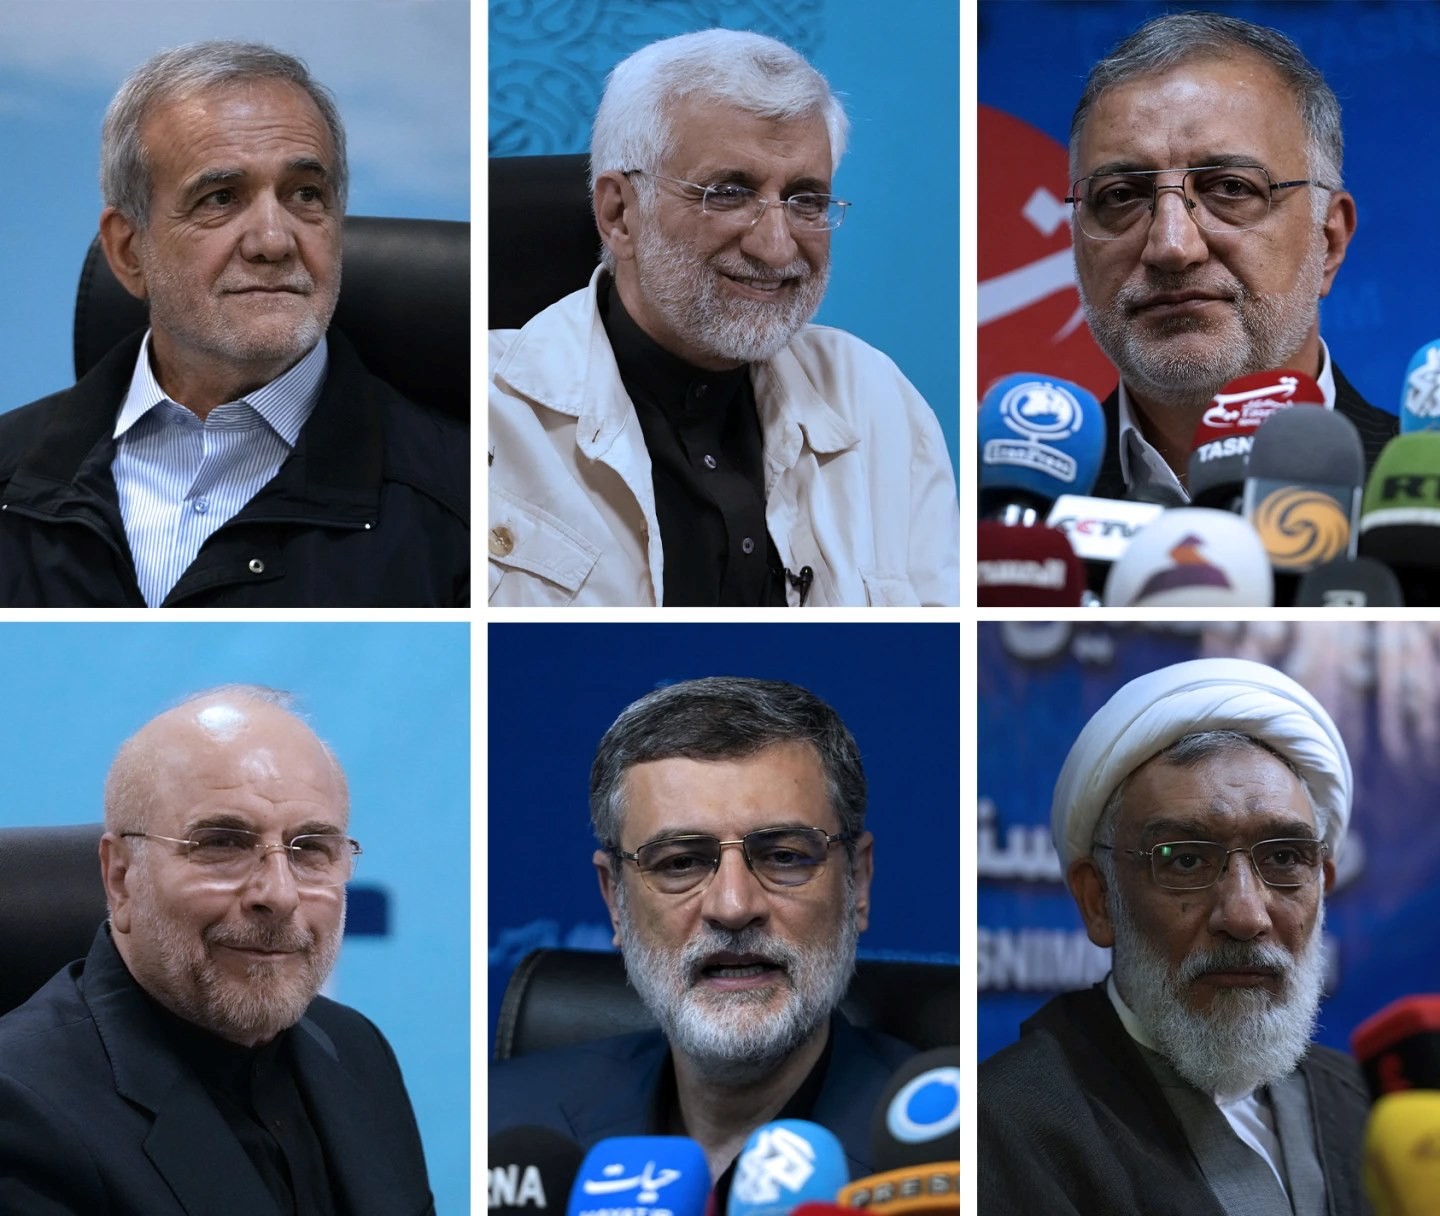 Bầu cử Tổng thống Iran: Tìm người mới giải những bài toán cũ